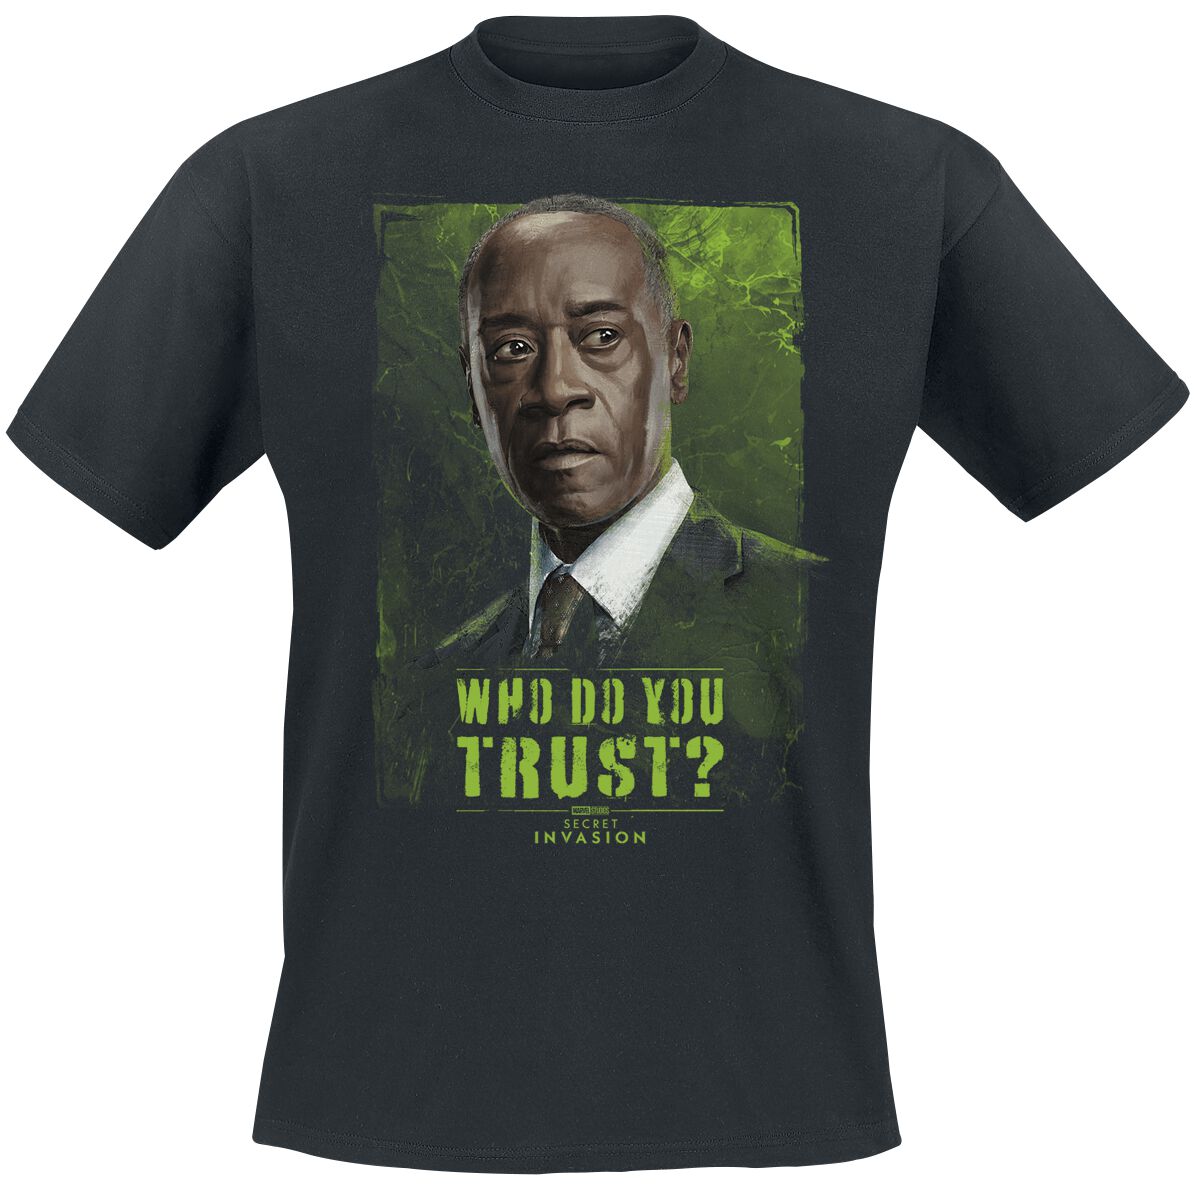 Secret Invasion - Marvel T-Shirt - Who Do You Trust? James - S bis 3XL - für Männer - Größe L - schwarz  - EMP exklusives Merchandise!